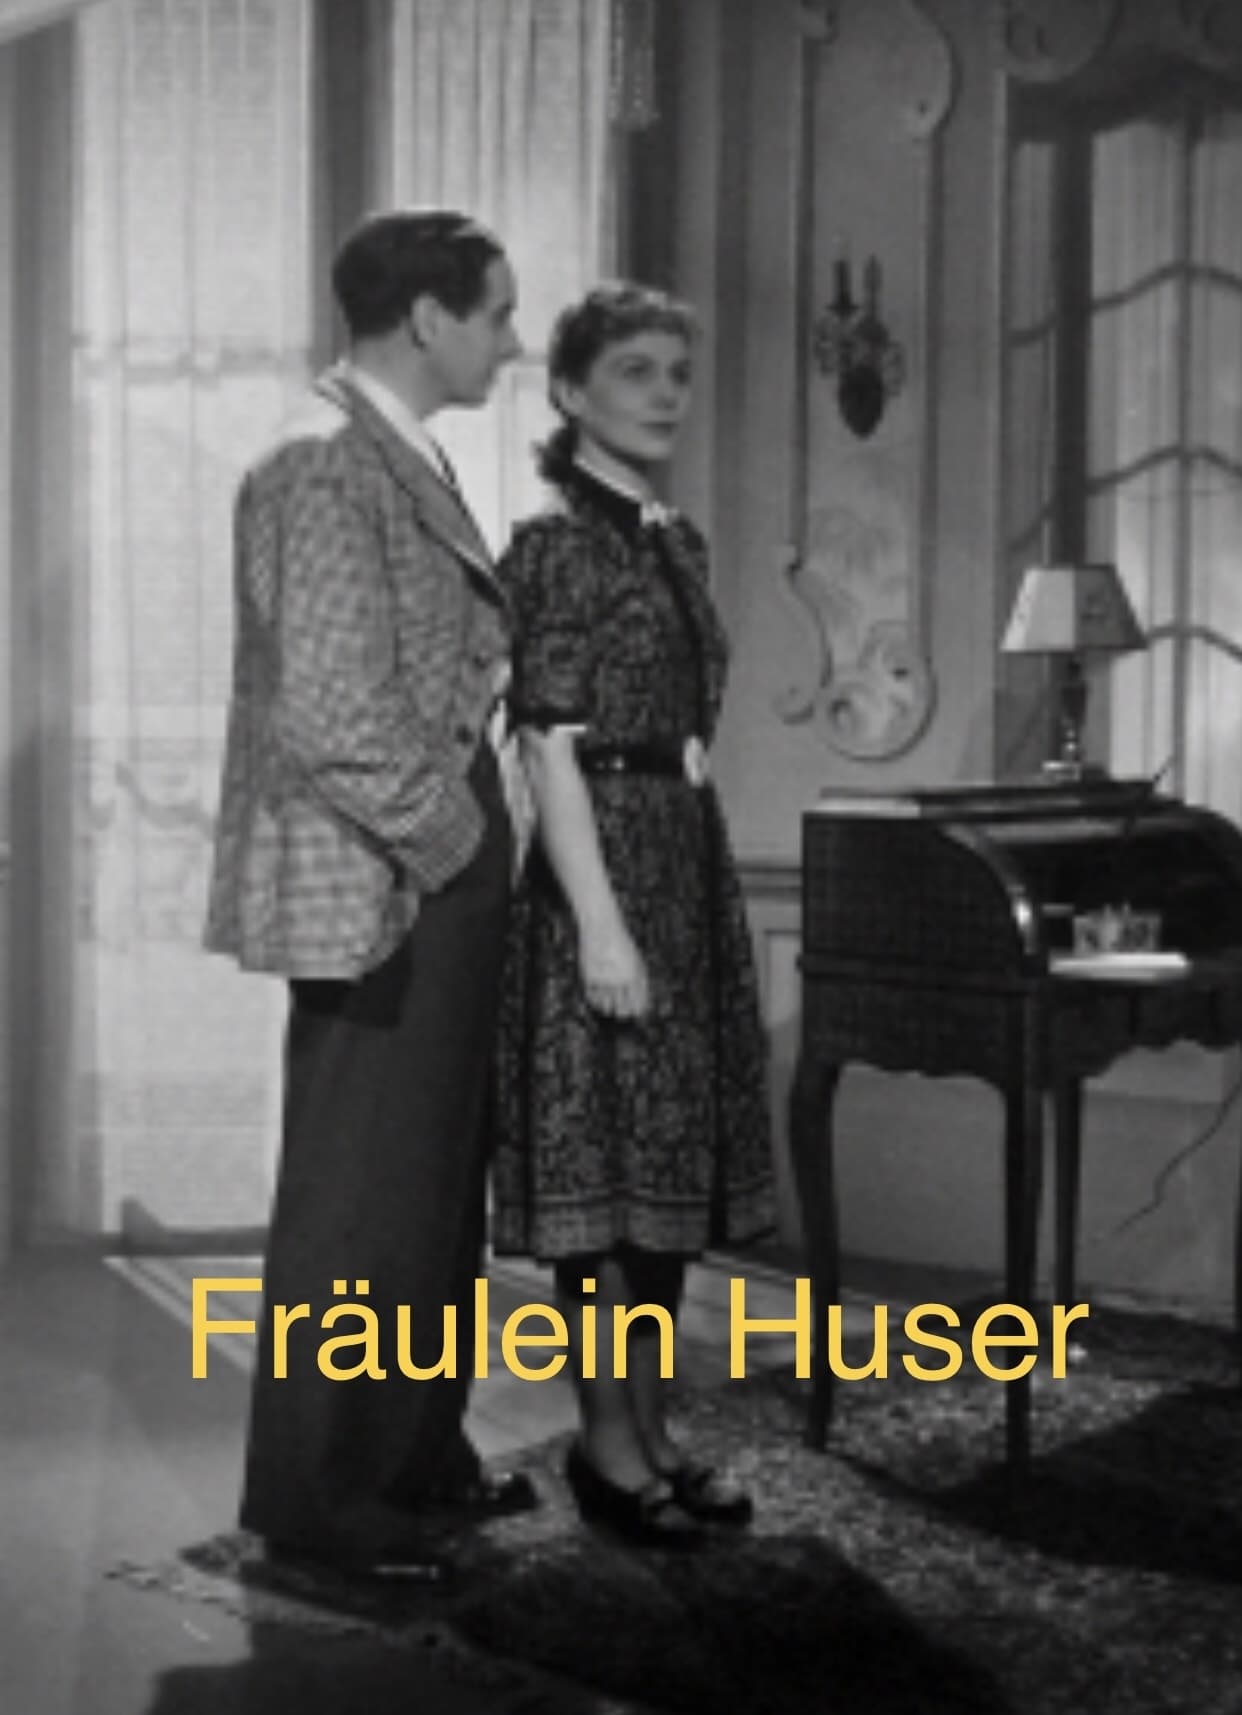 Fräulein Huser